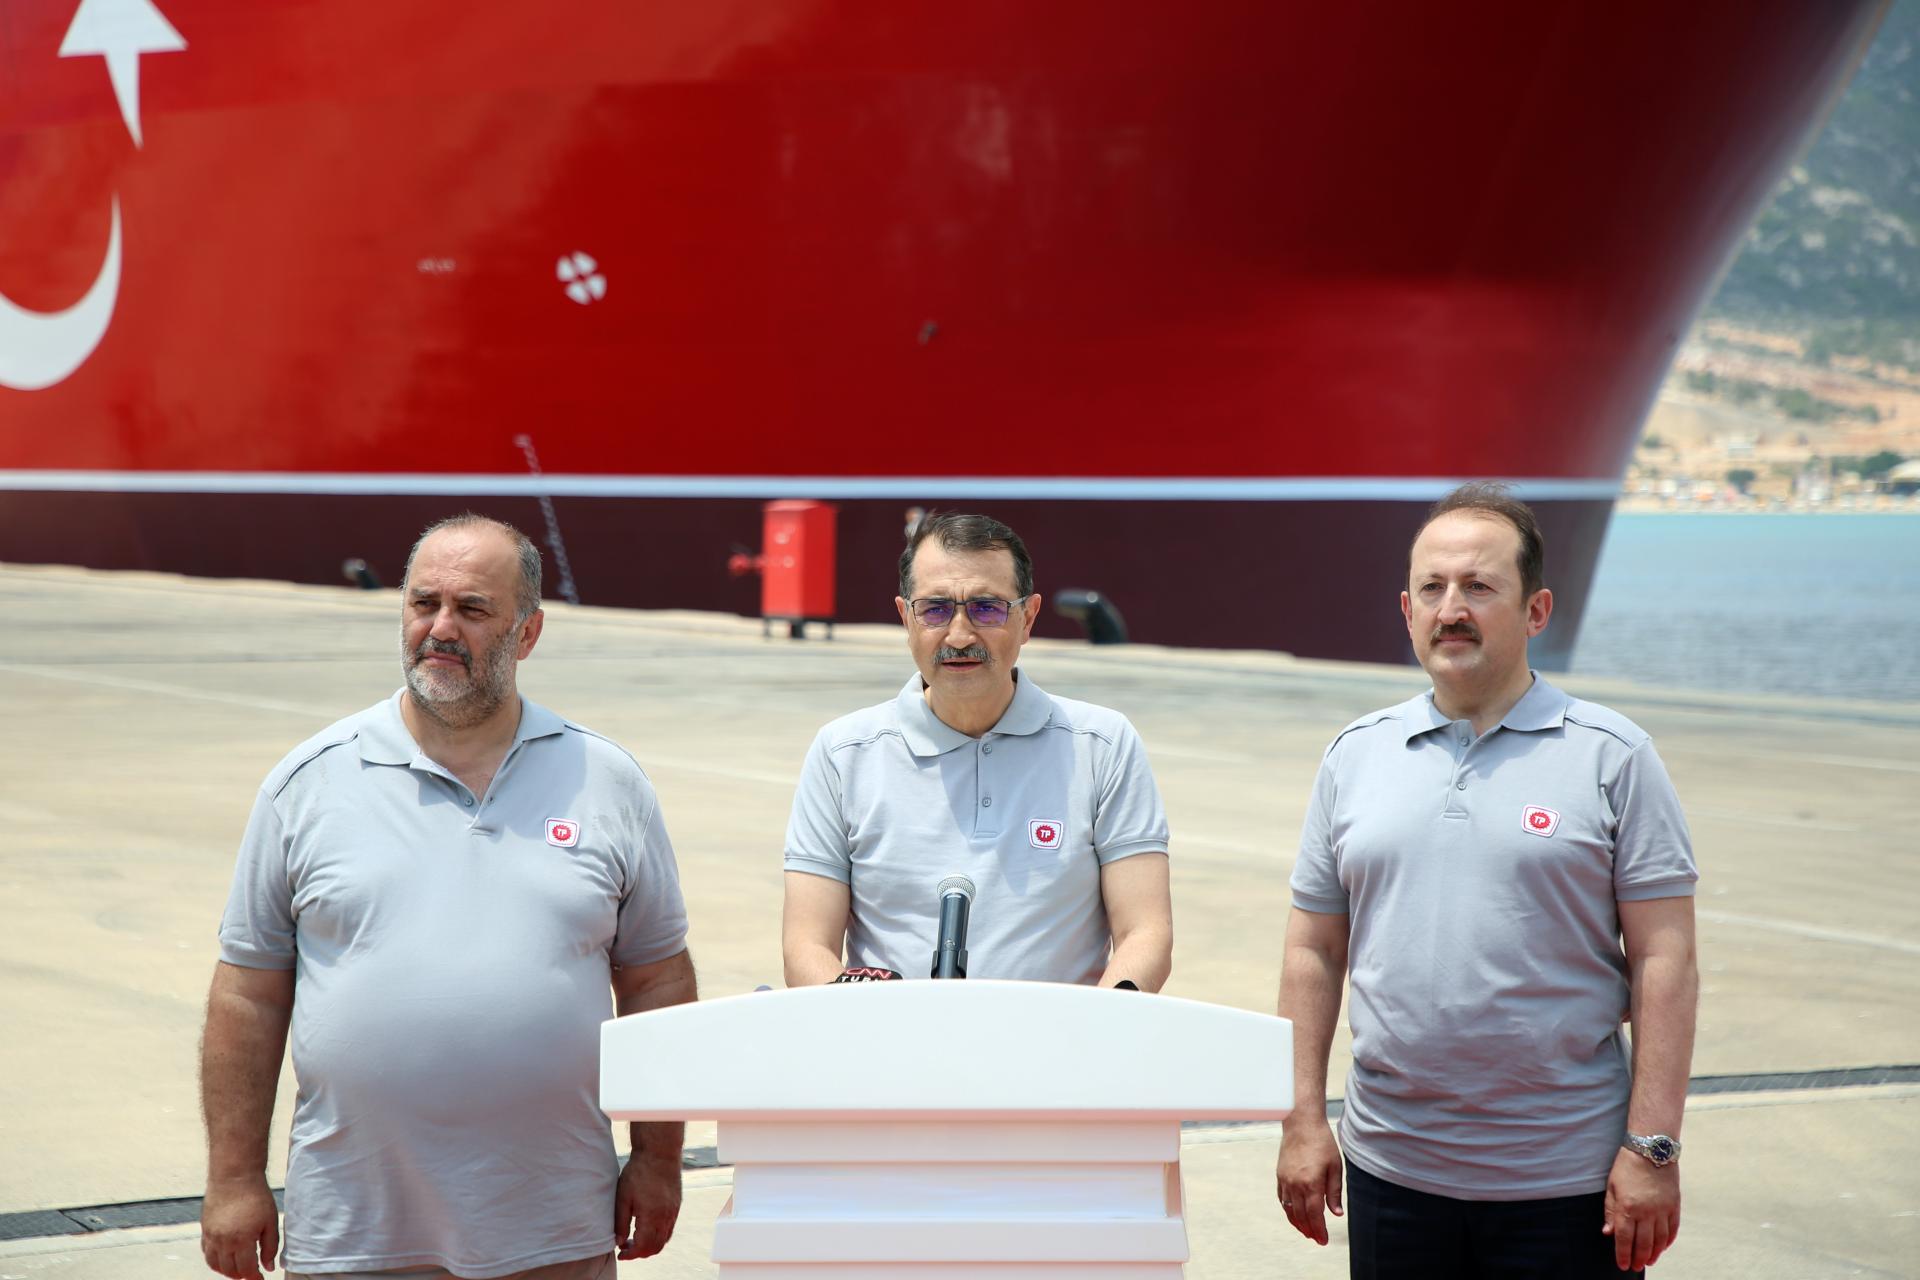 “El buque de perforación Abdülhamid Han operará por primera vez probablemente en el Mediterráneo”